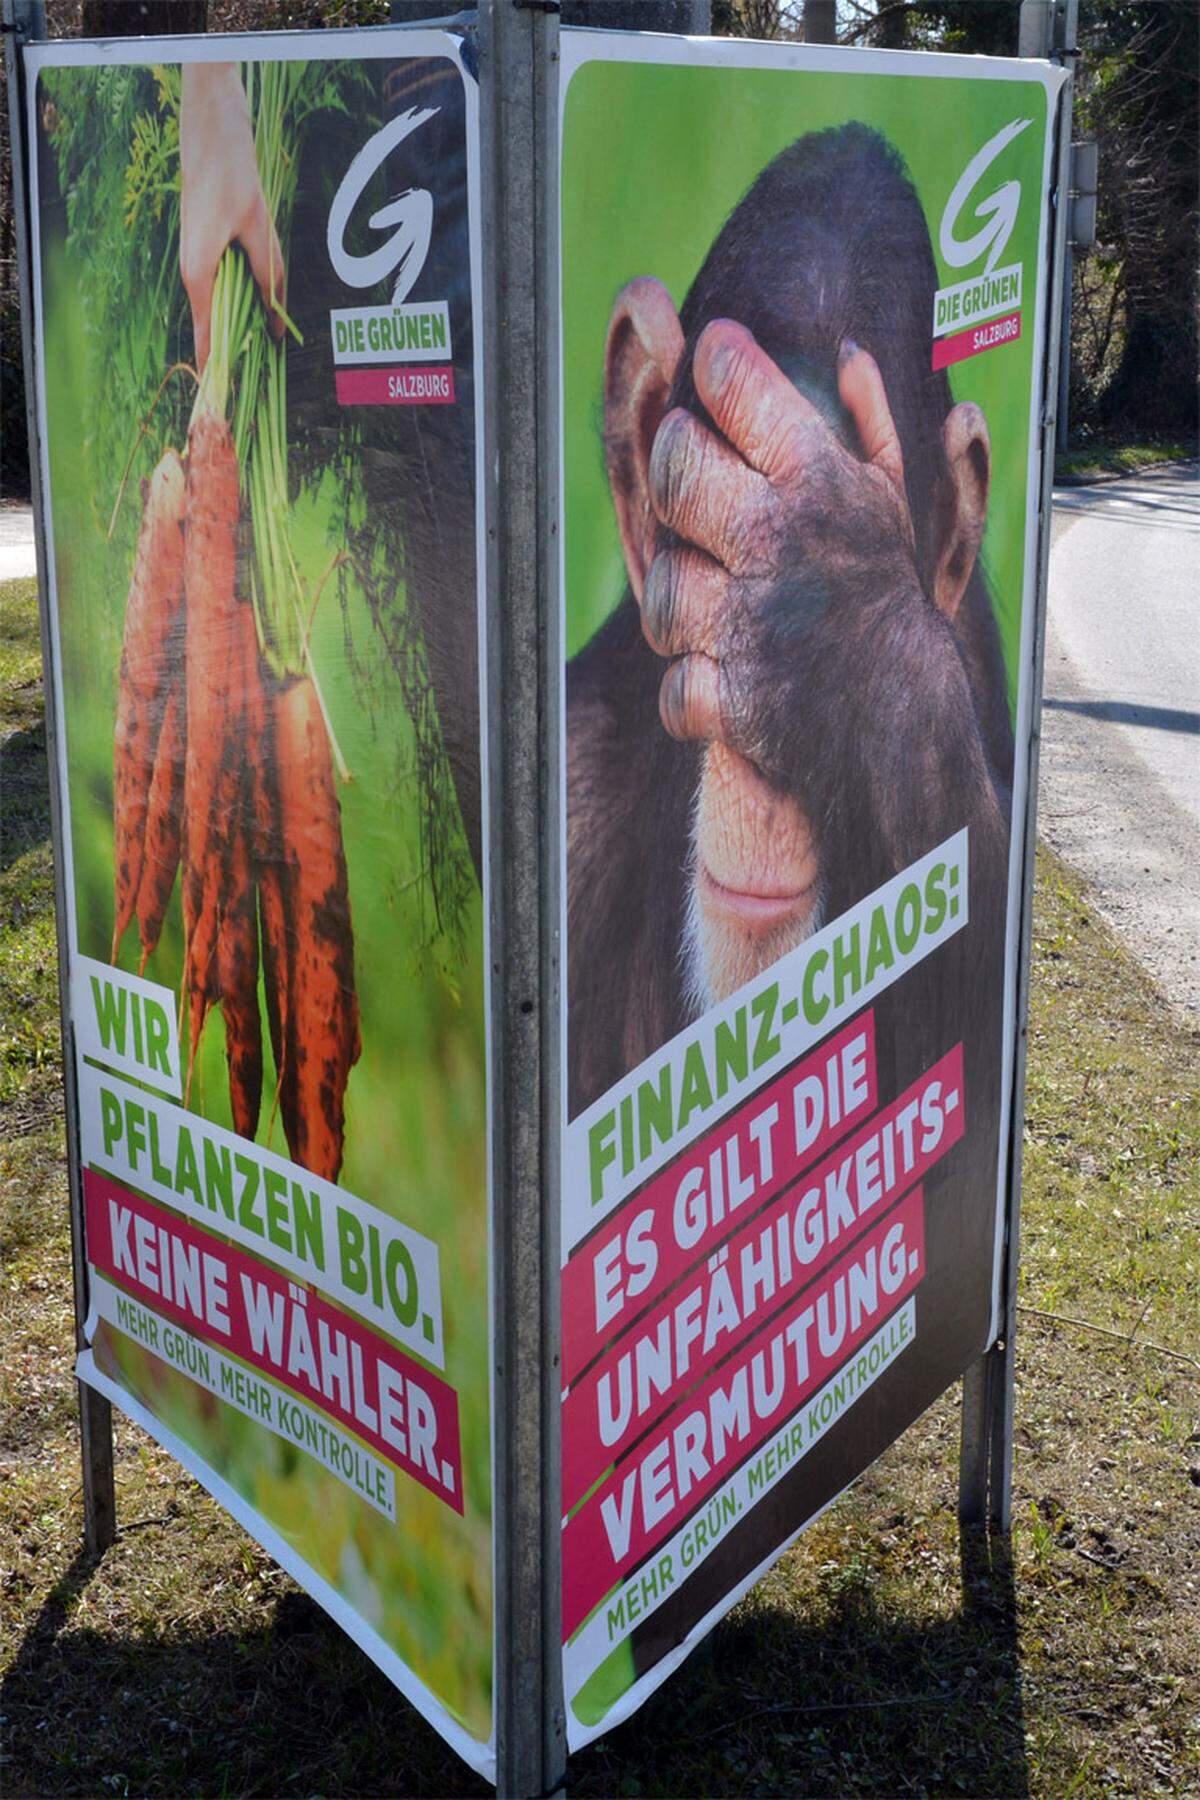 Die Grünen versuchen es mit Humor: "Finanz-Chaos: Es gilt die Unfähigkeitsvermutung" ist auf den Plakaten zu lesen - mit dem Bild eines Affen, der sich die Augen zuhält. Und: "Rot-Schwarz: Nichts geht mehr", geziert von einem hilflos auf dem Rücken liegenden Marienkäfer. Das Motto "Mehr Grün. Mehr Kontrolle" findet sich auf allen Plakaten.